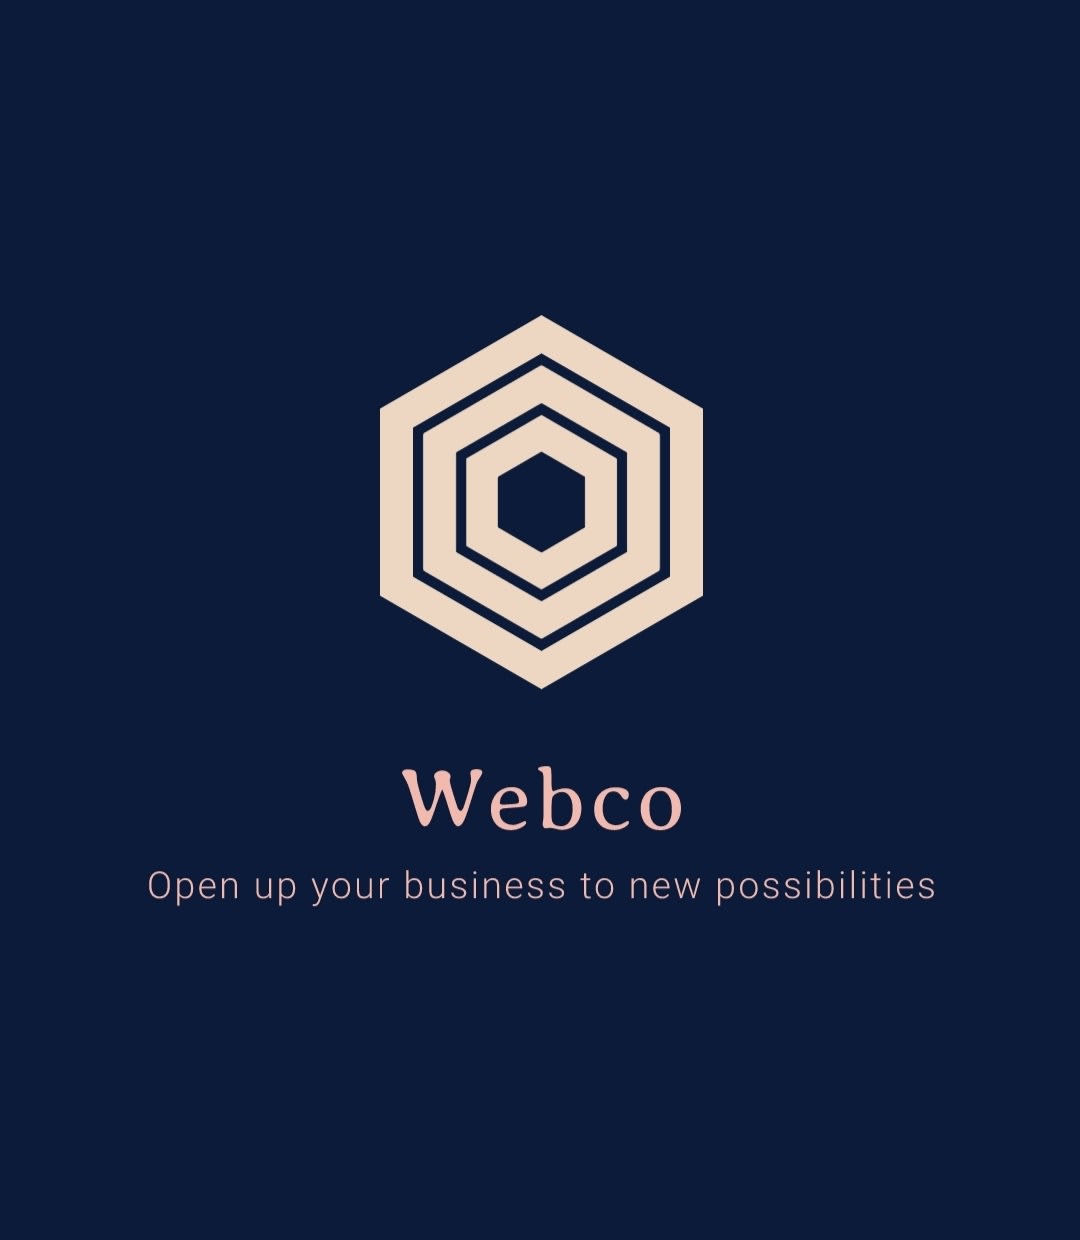 WebCo